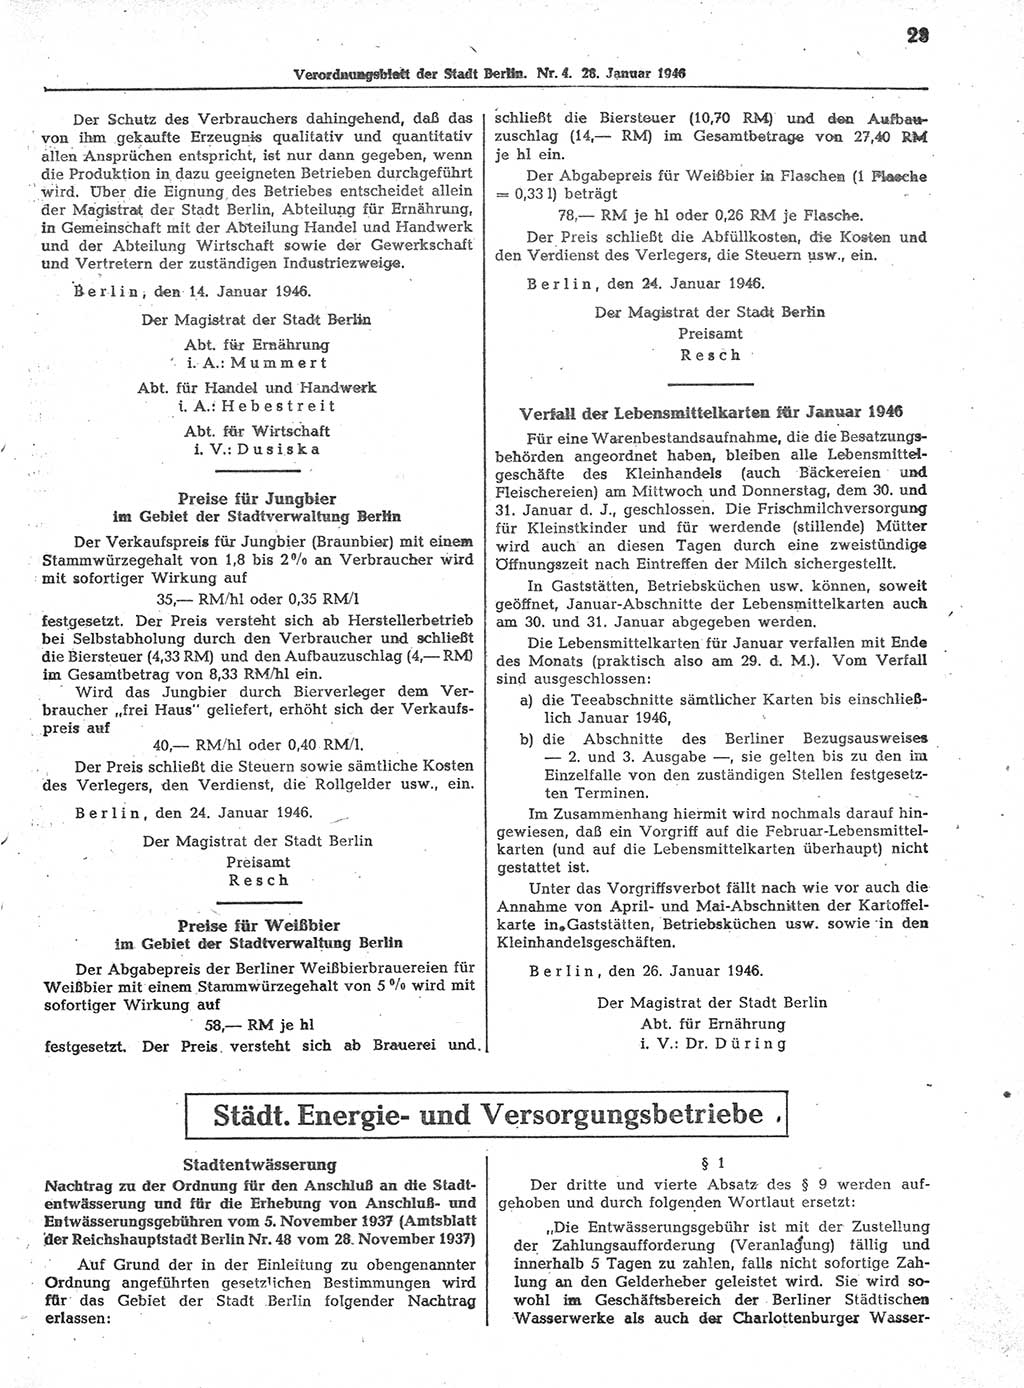 Verordnungsblatt (VOBl.) der Stadt Berlin, für Groß-Berlin 1946, Seite 23 (VOBl. Bln. 1946, S. 23)